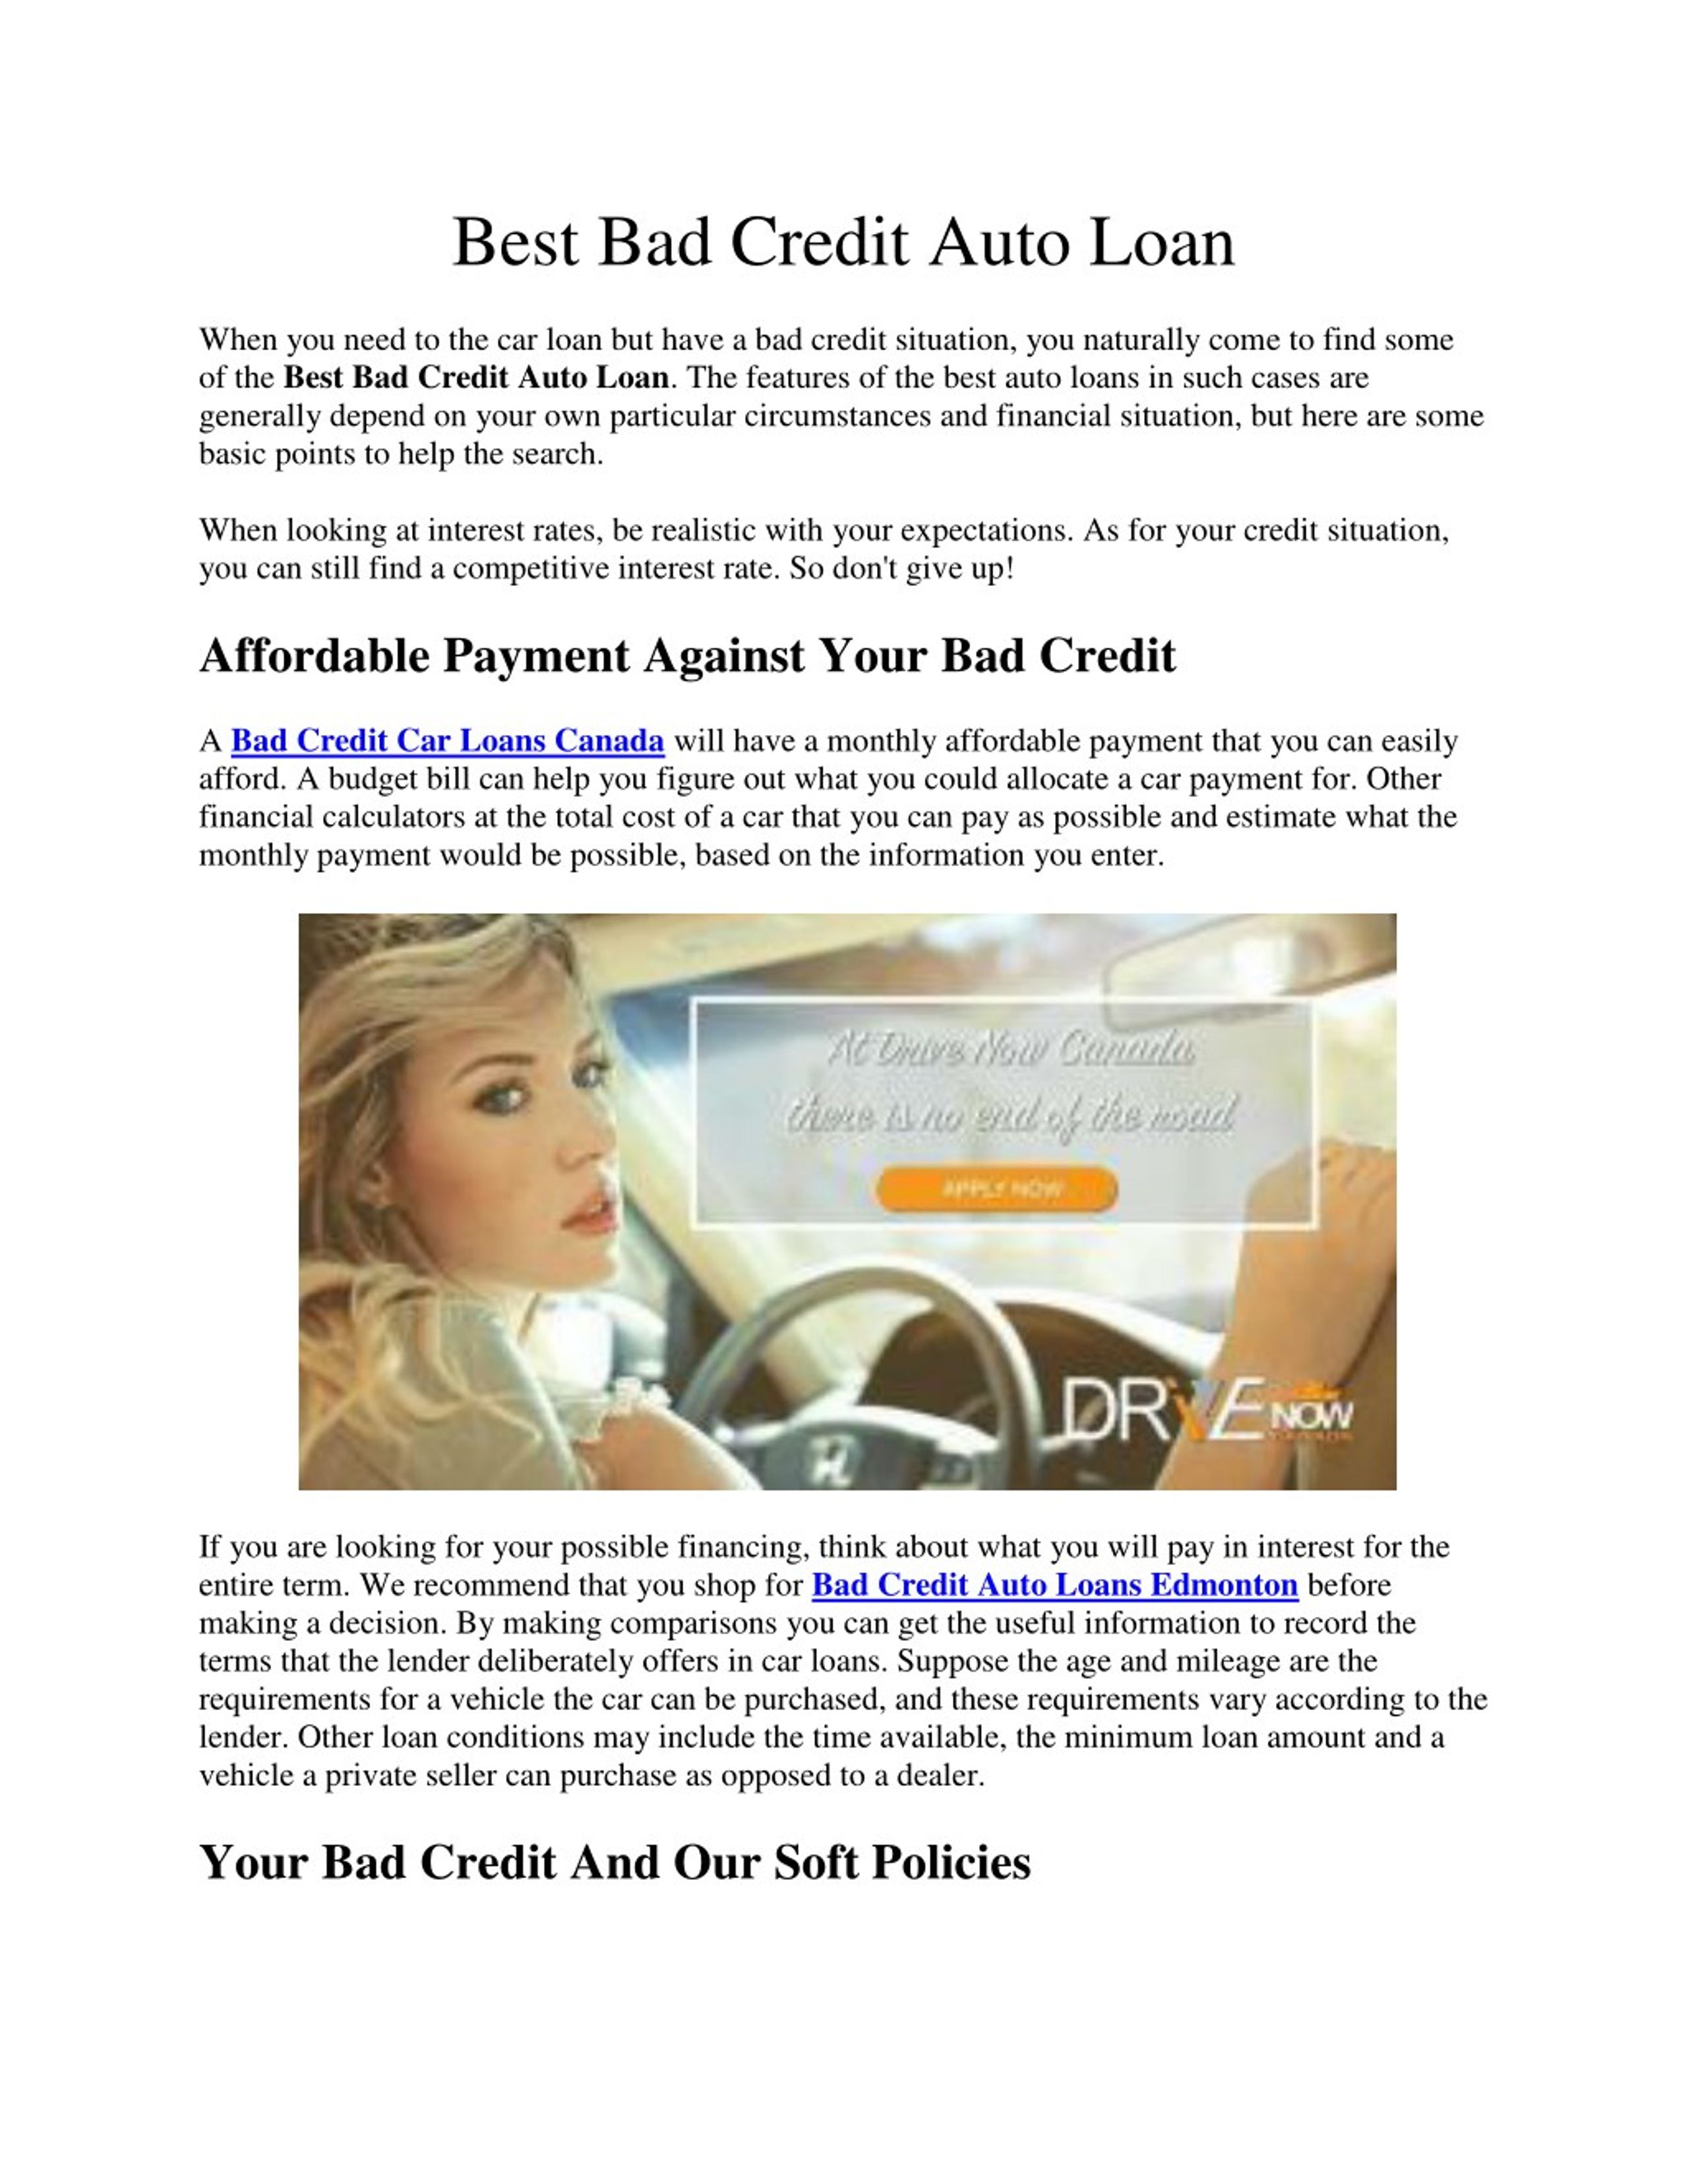 Credit car loan